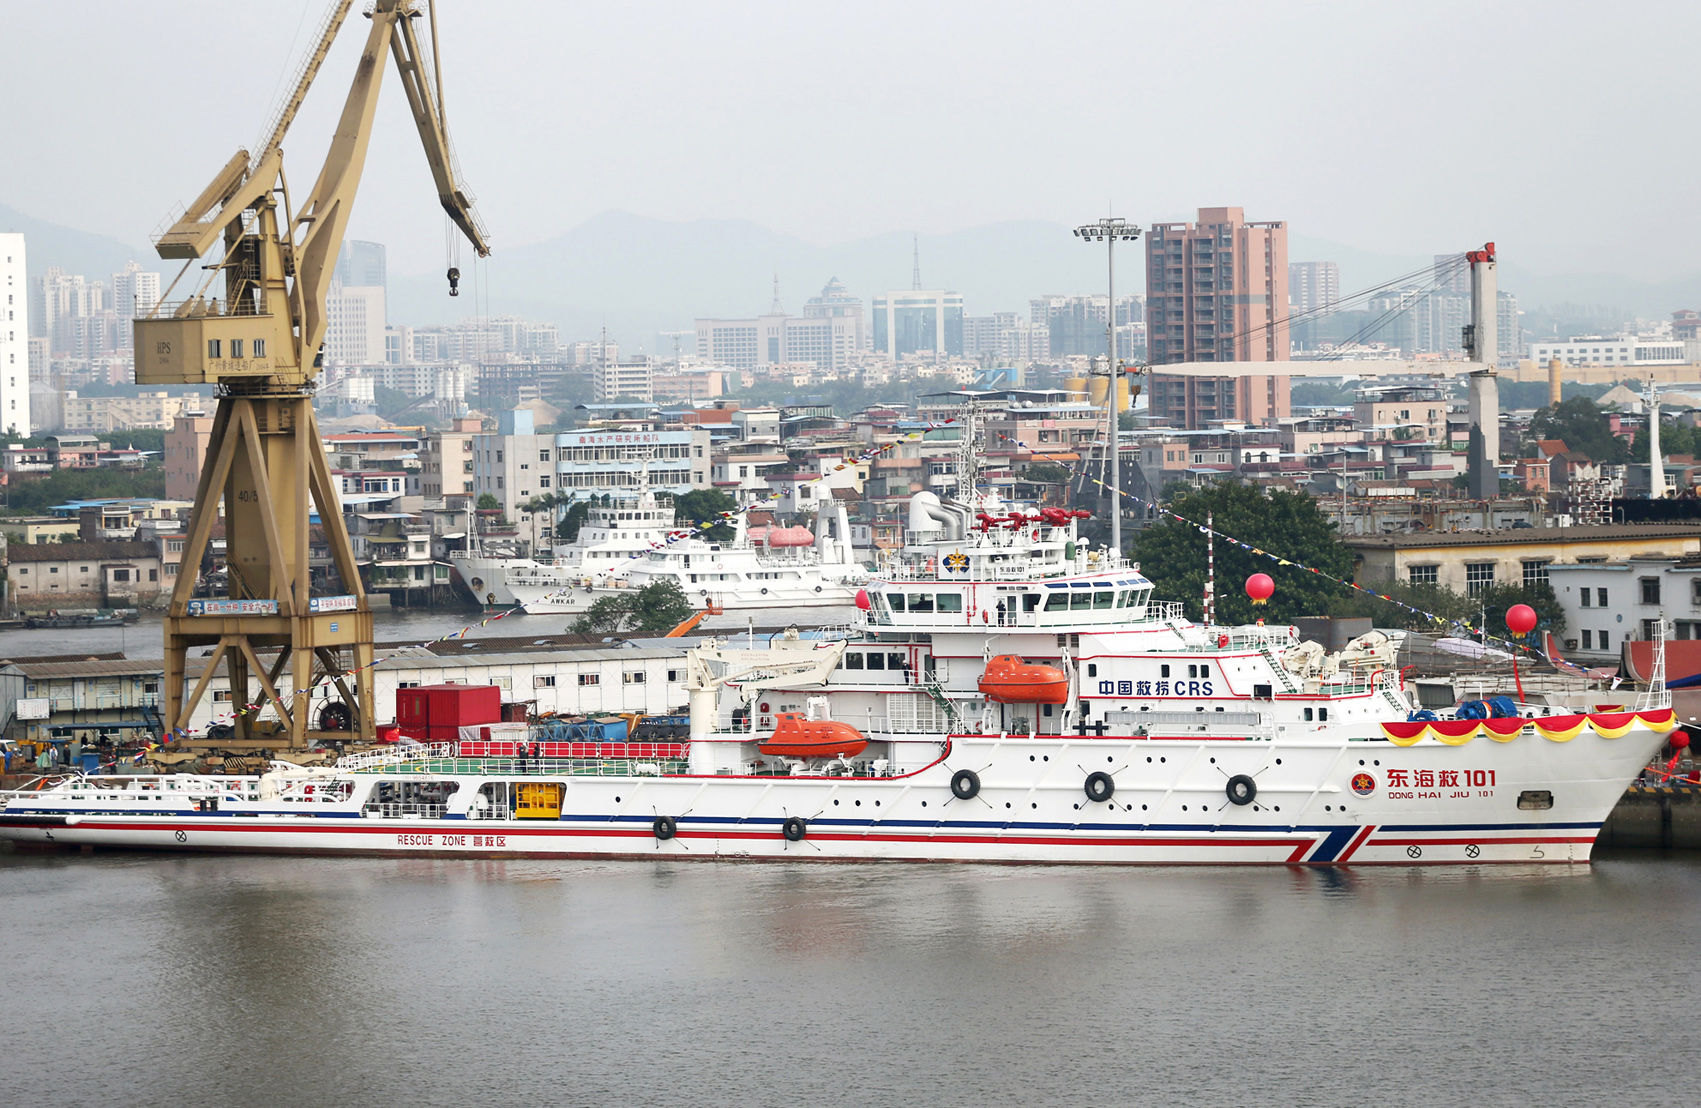 中国最新型海上远洋救助船“东海救101”轮交付使用